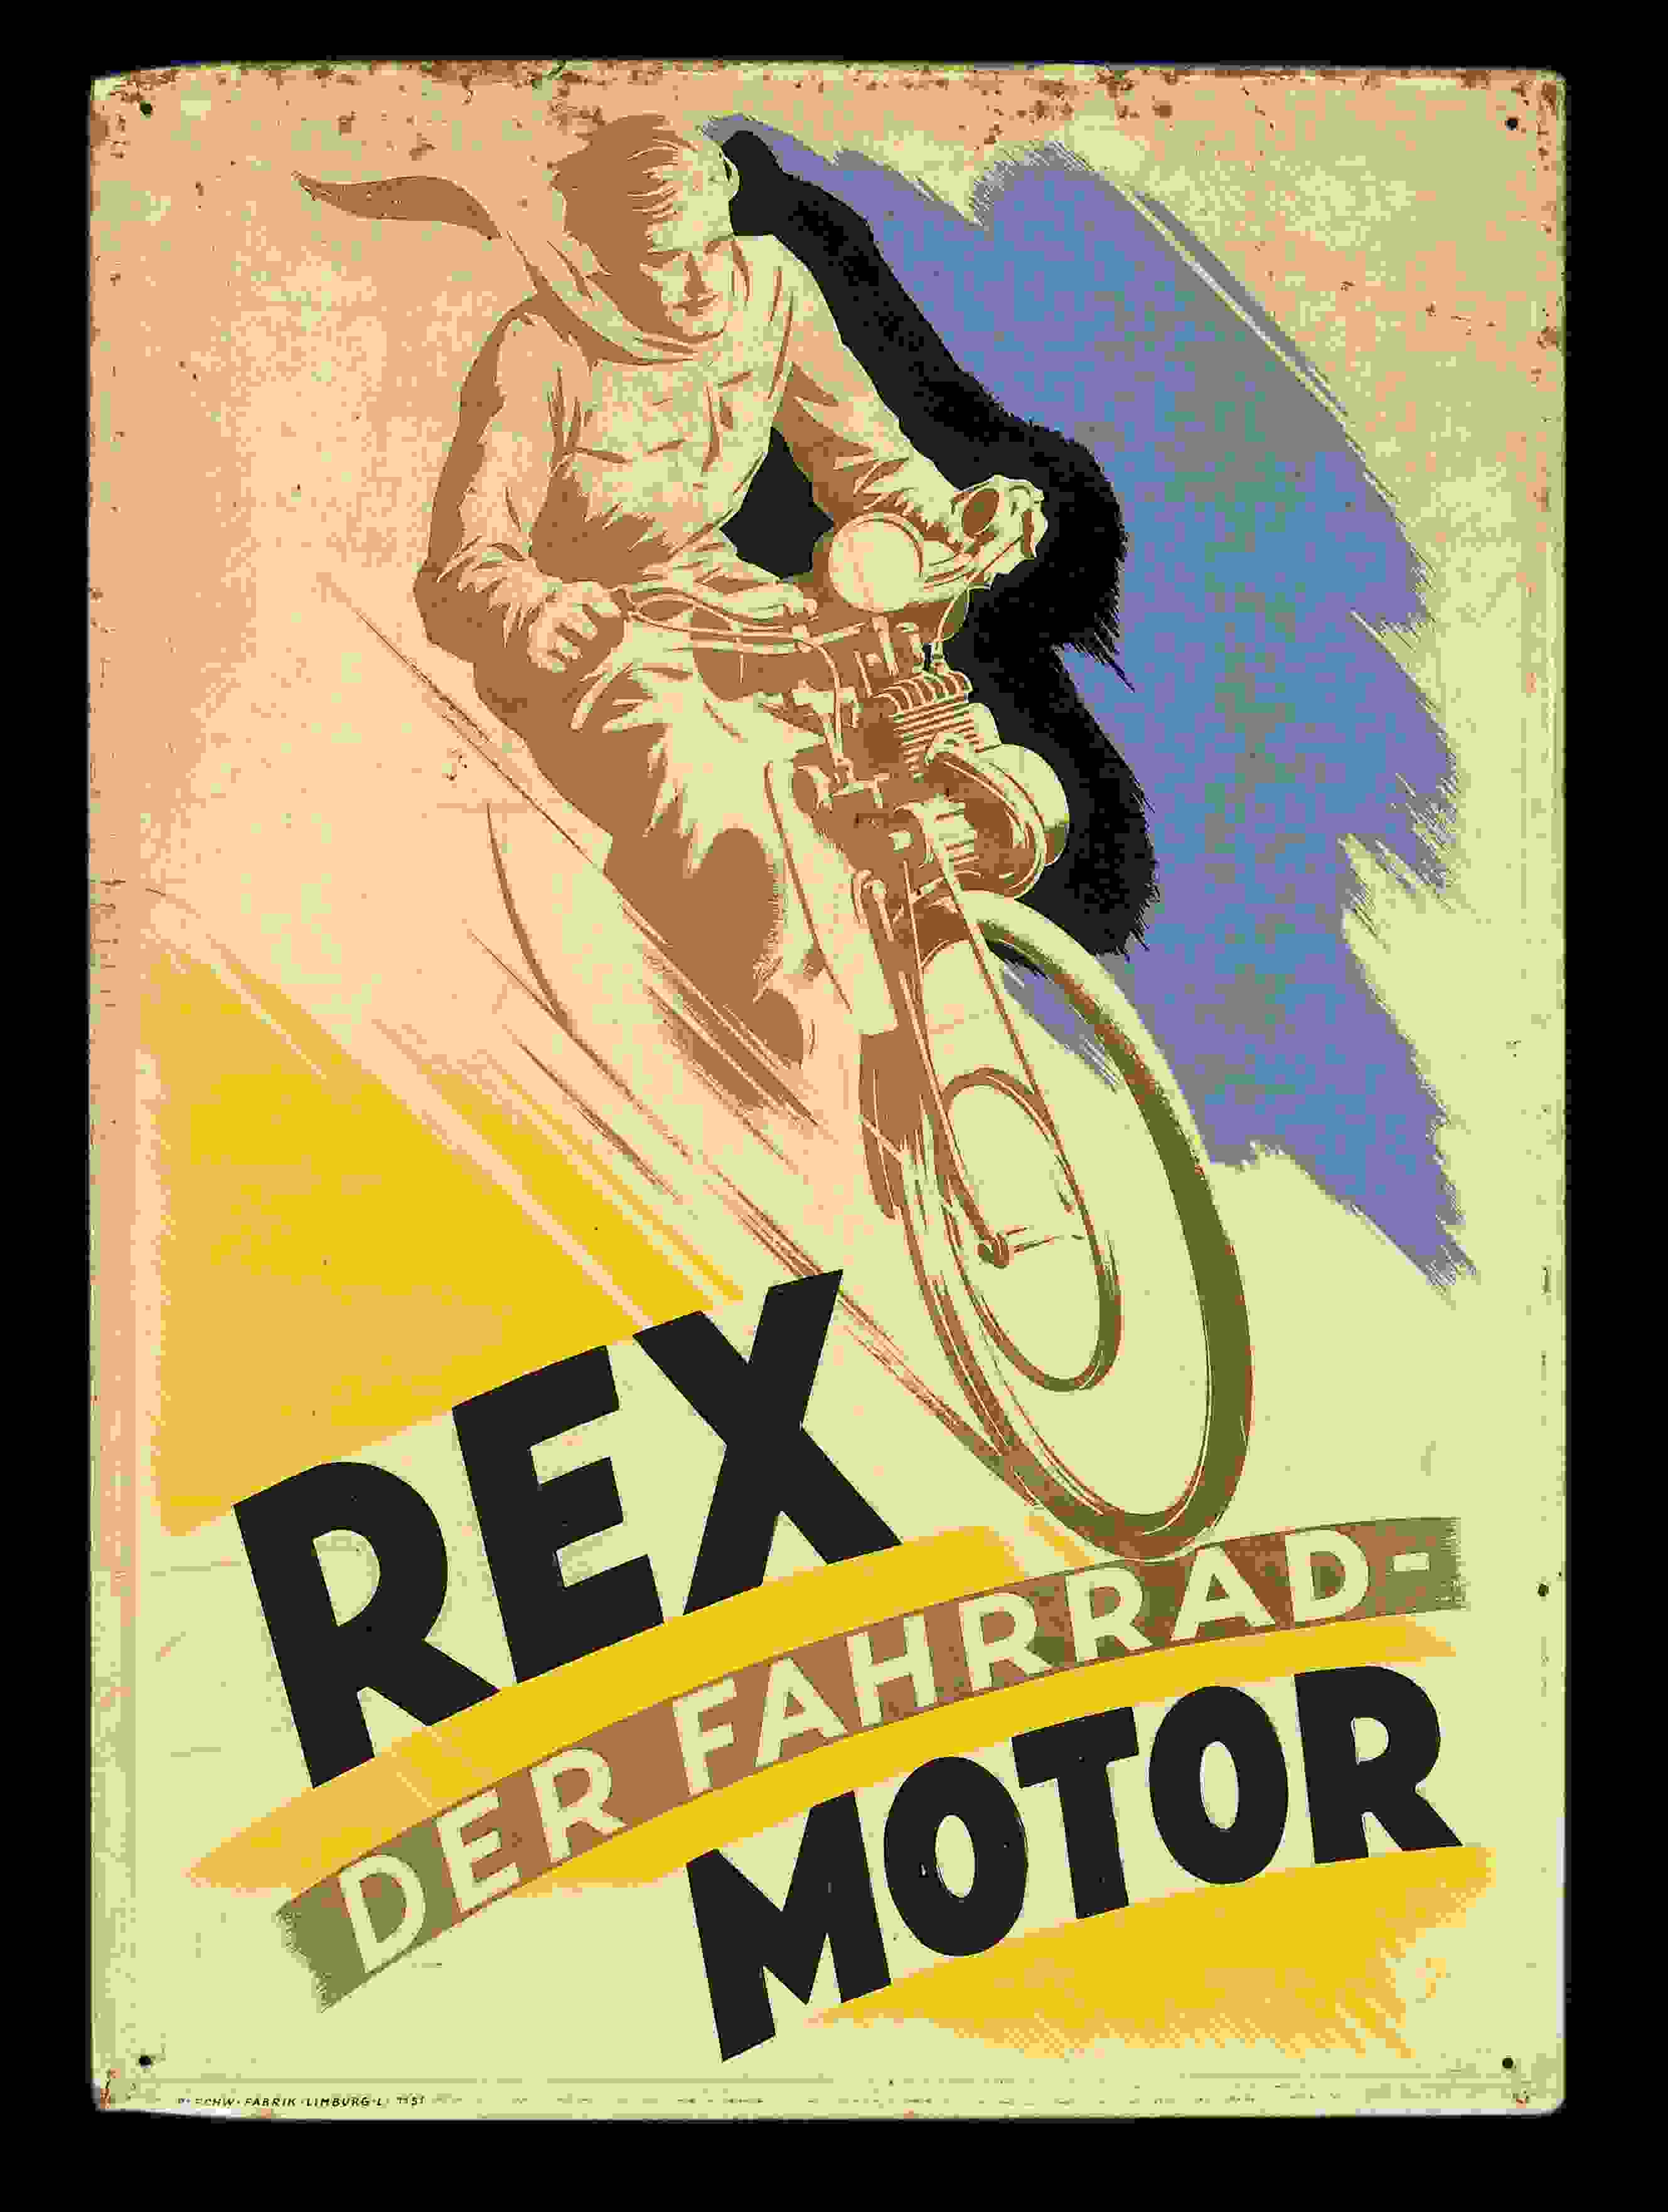 Rex Fahrrad-Motor 